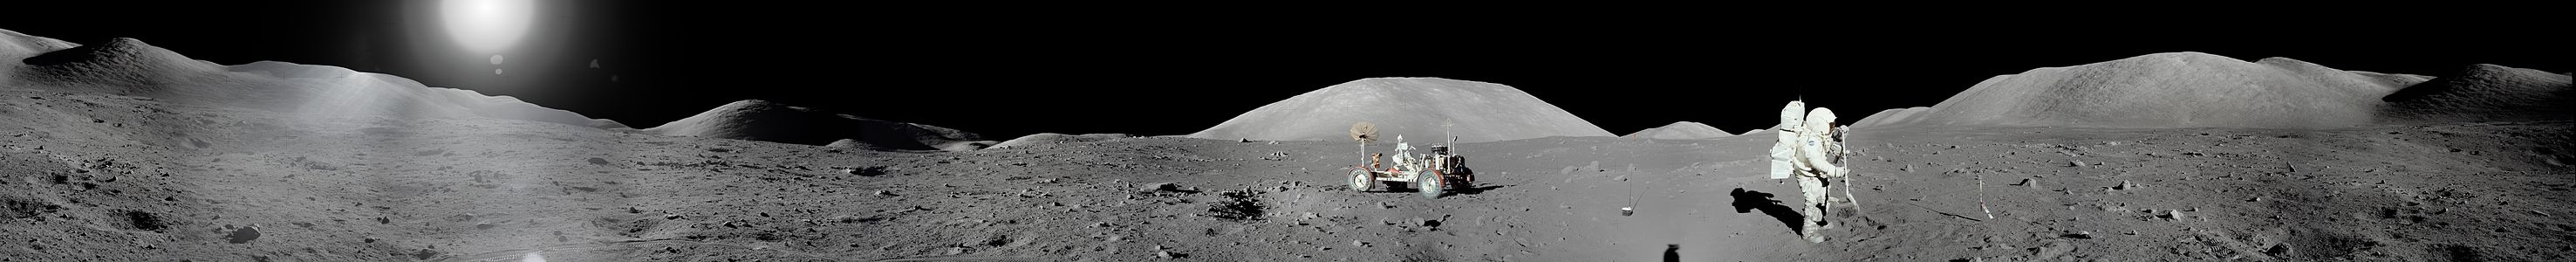 Apollo 17 görevi sırasında çekilen Ayın panoramik fotoğrafı. Ortasında Ay taşıtı Lunar Roving Vehicle görülmektedir (1972). (Üreten:NASA)